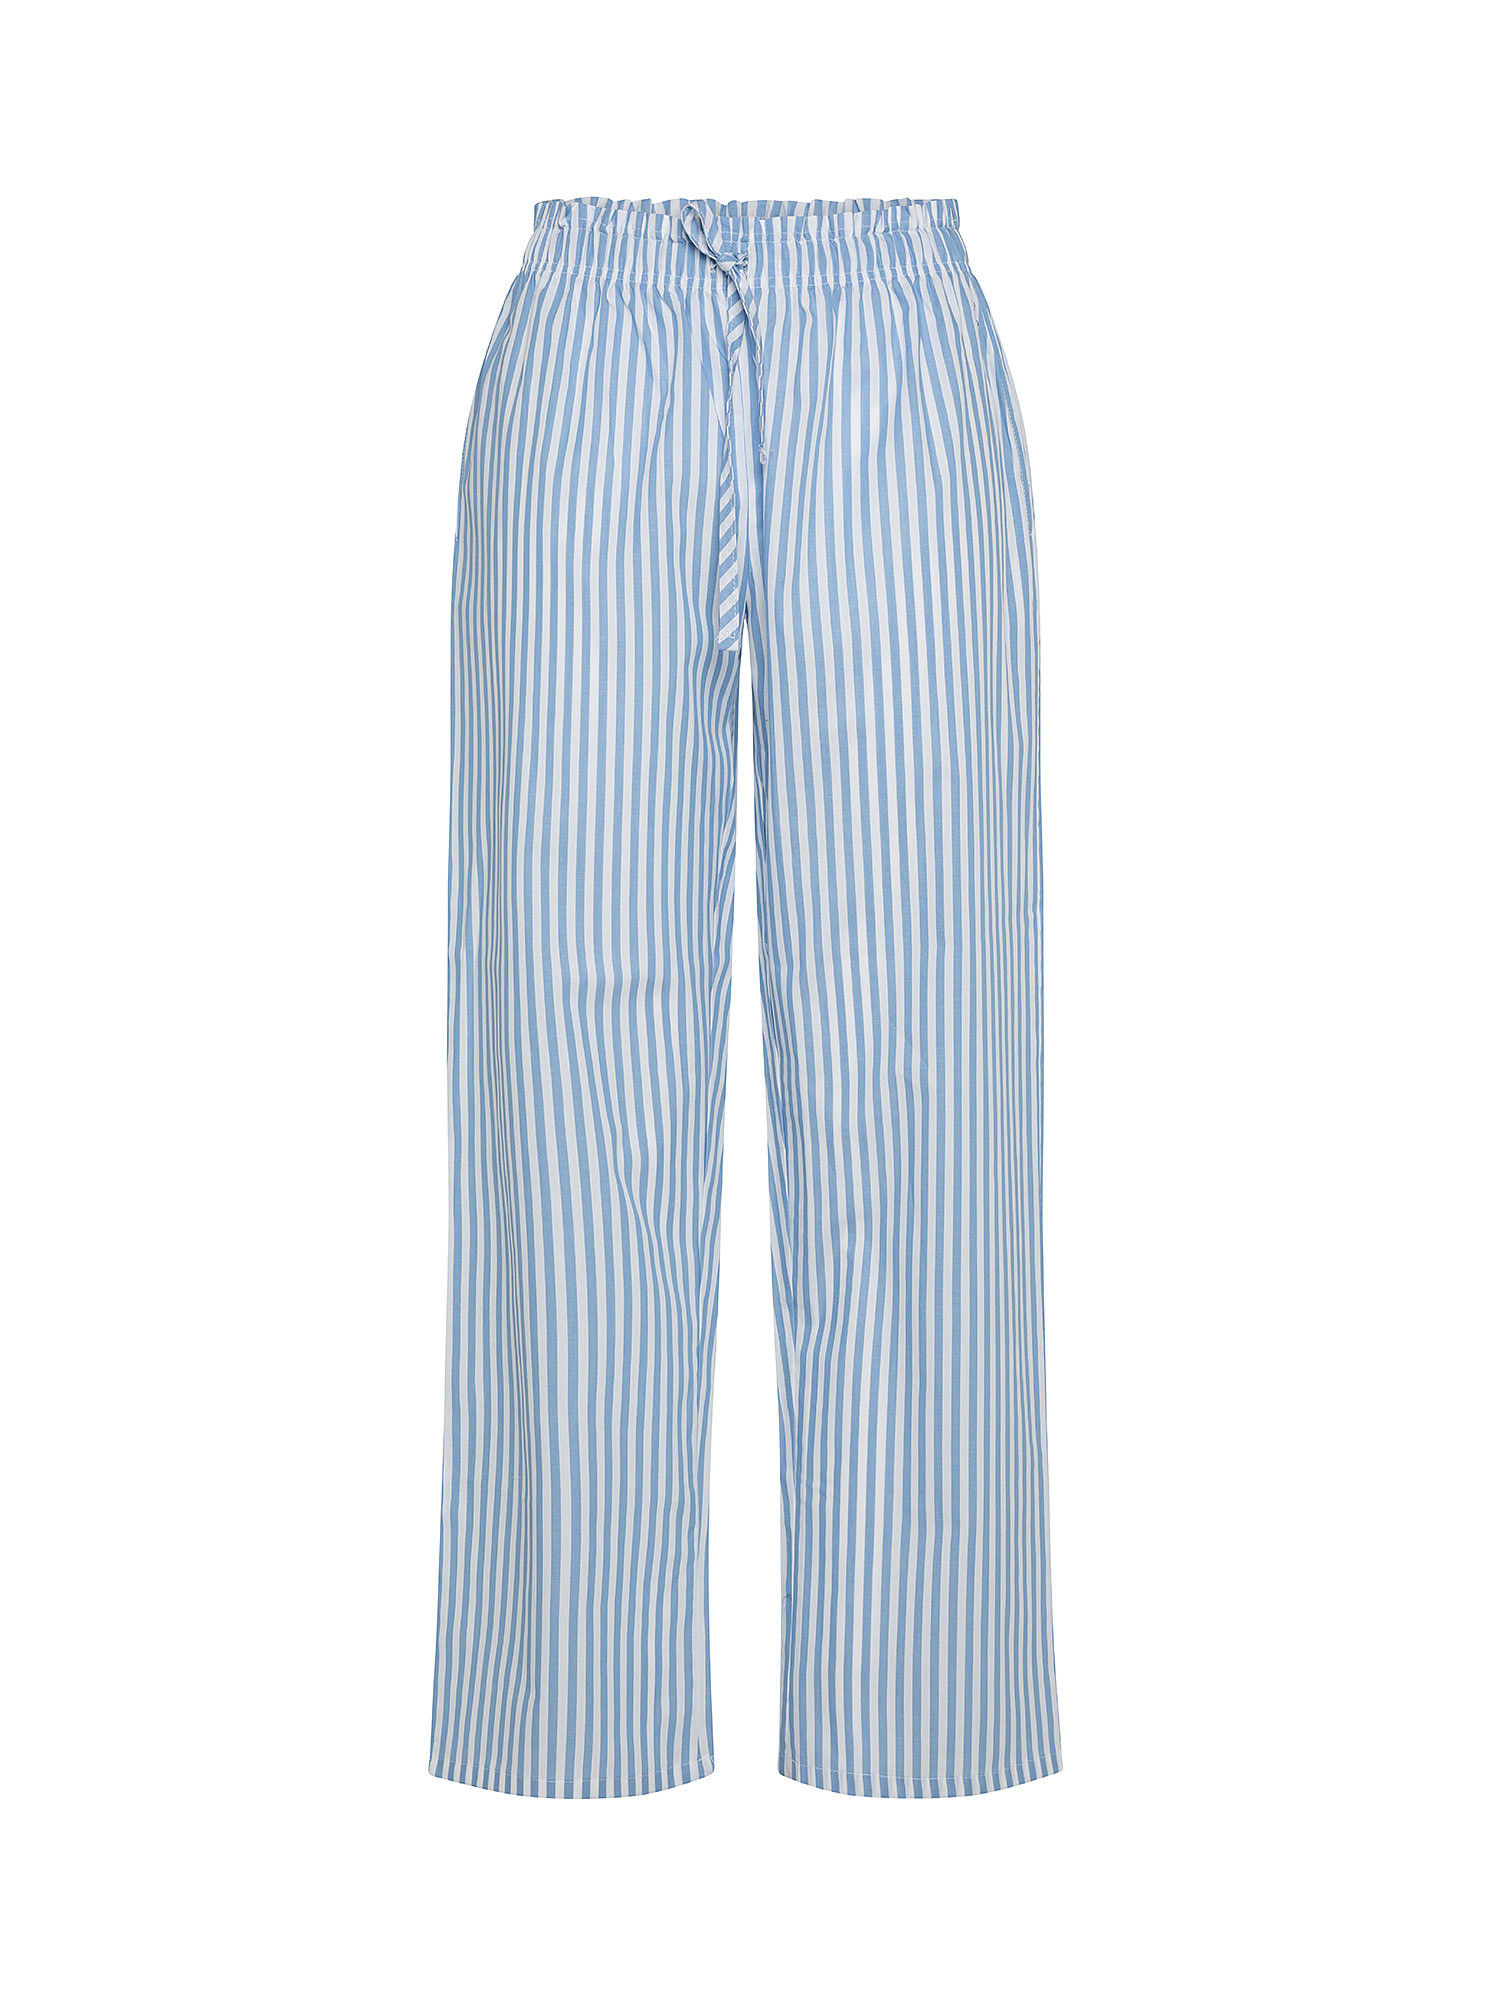 Pantaloni cotone tinto filo a righe, Azzurro chiaro, large image number 0